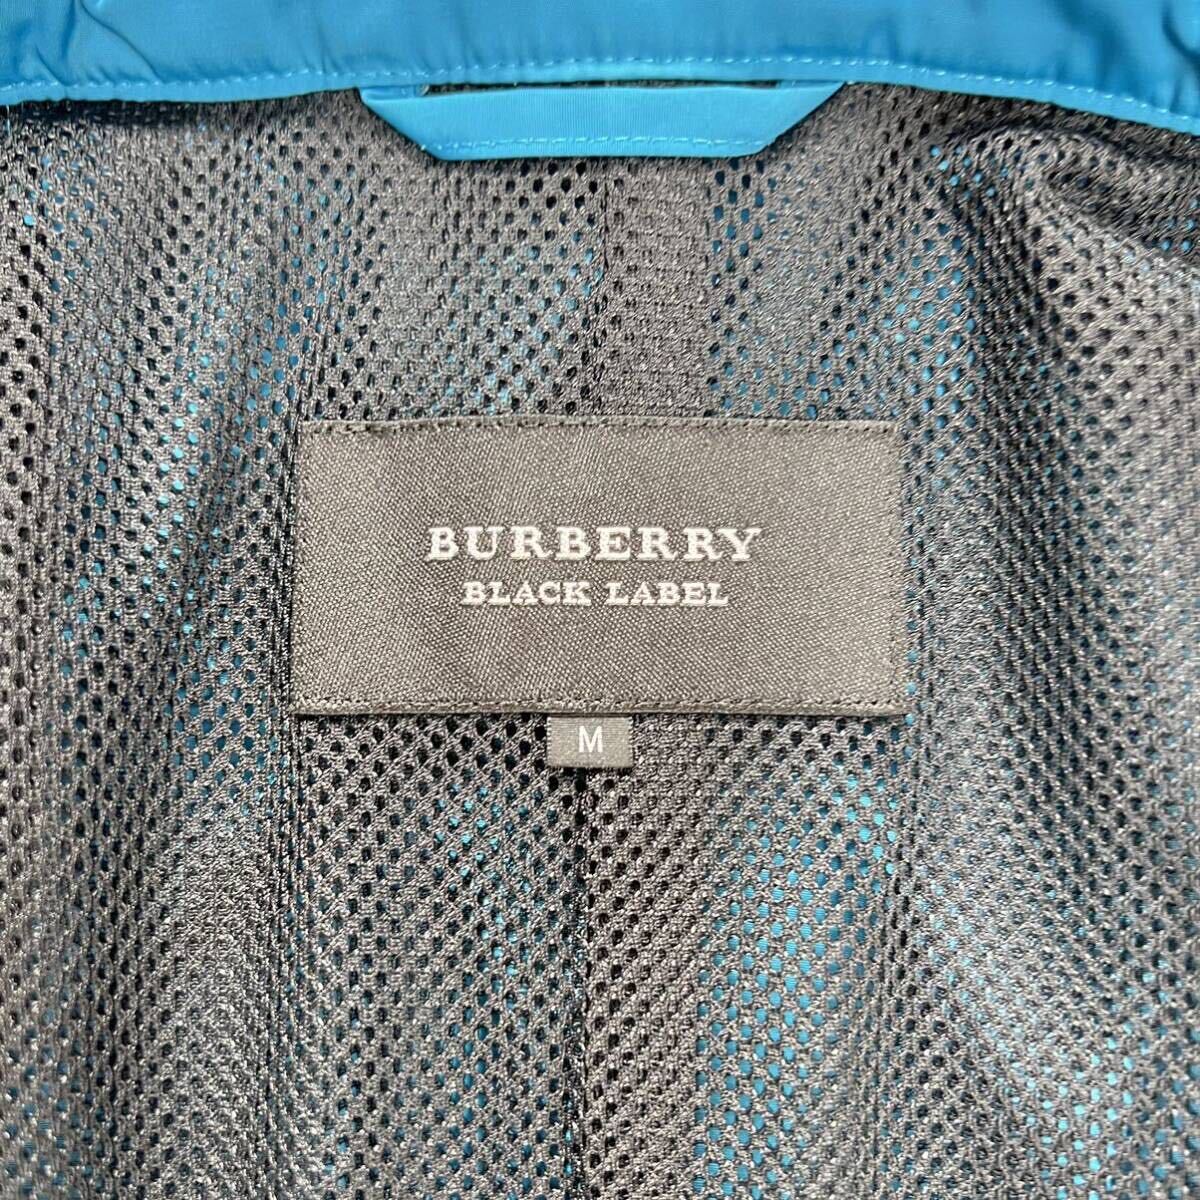  превосходный товар * Burberry Black Label горная парка BURBERRY BLACK LABEL жакет 2way нашивка Logo plate проверка водоотталкивающий 